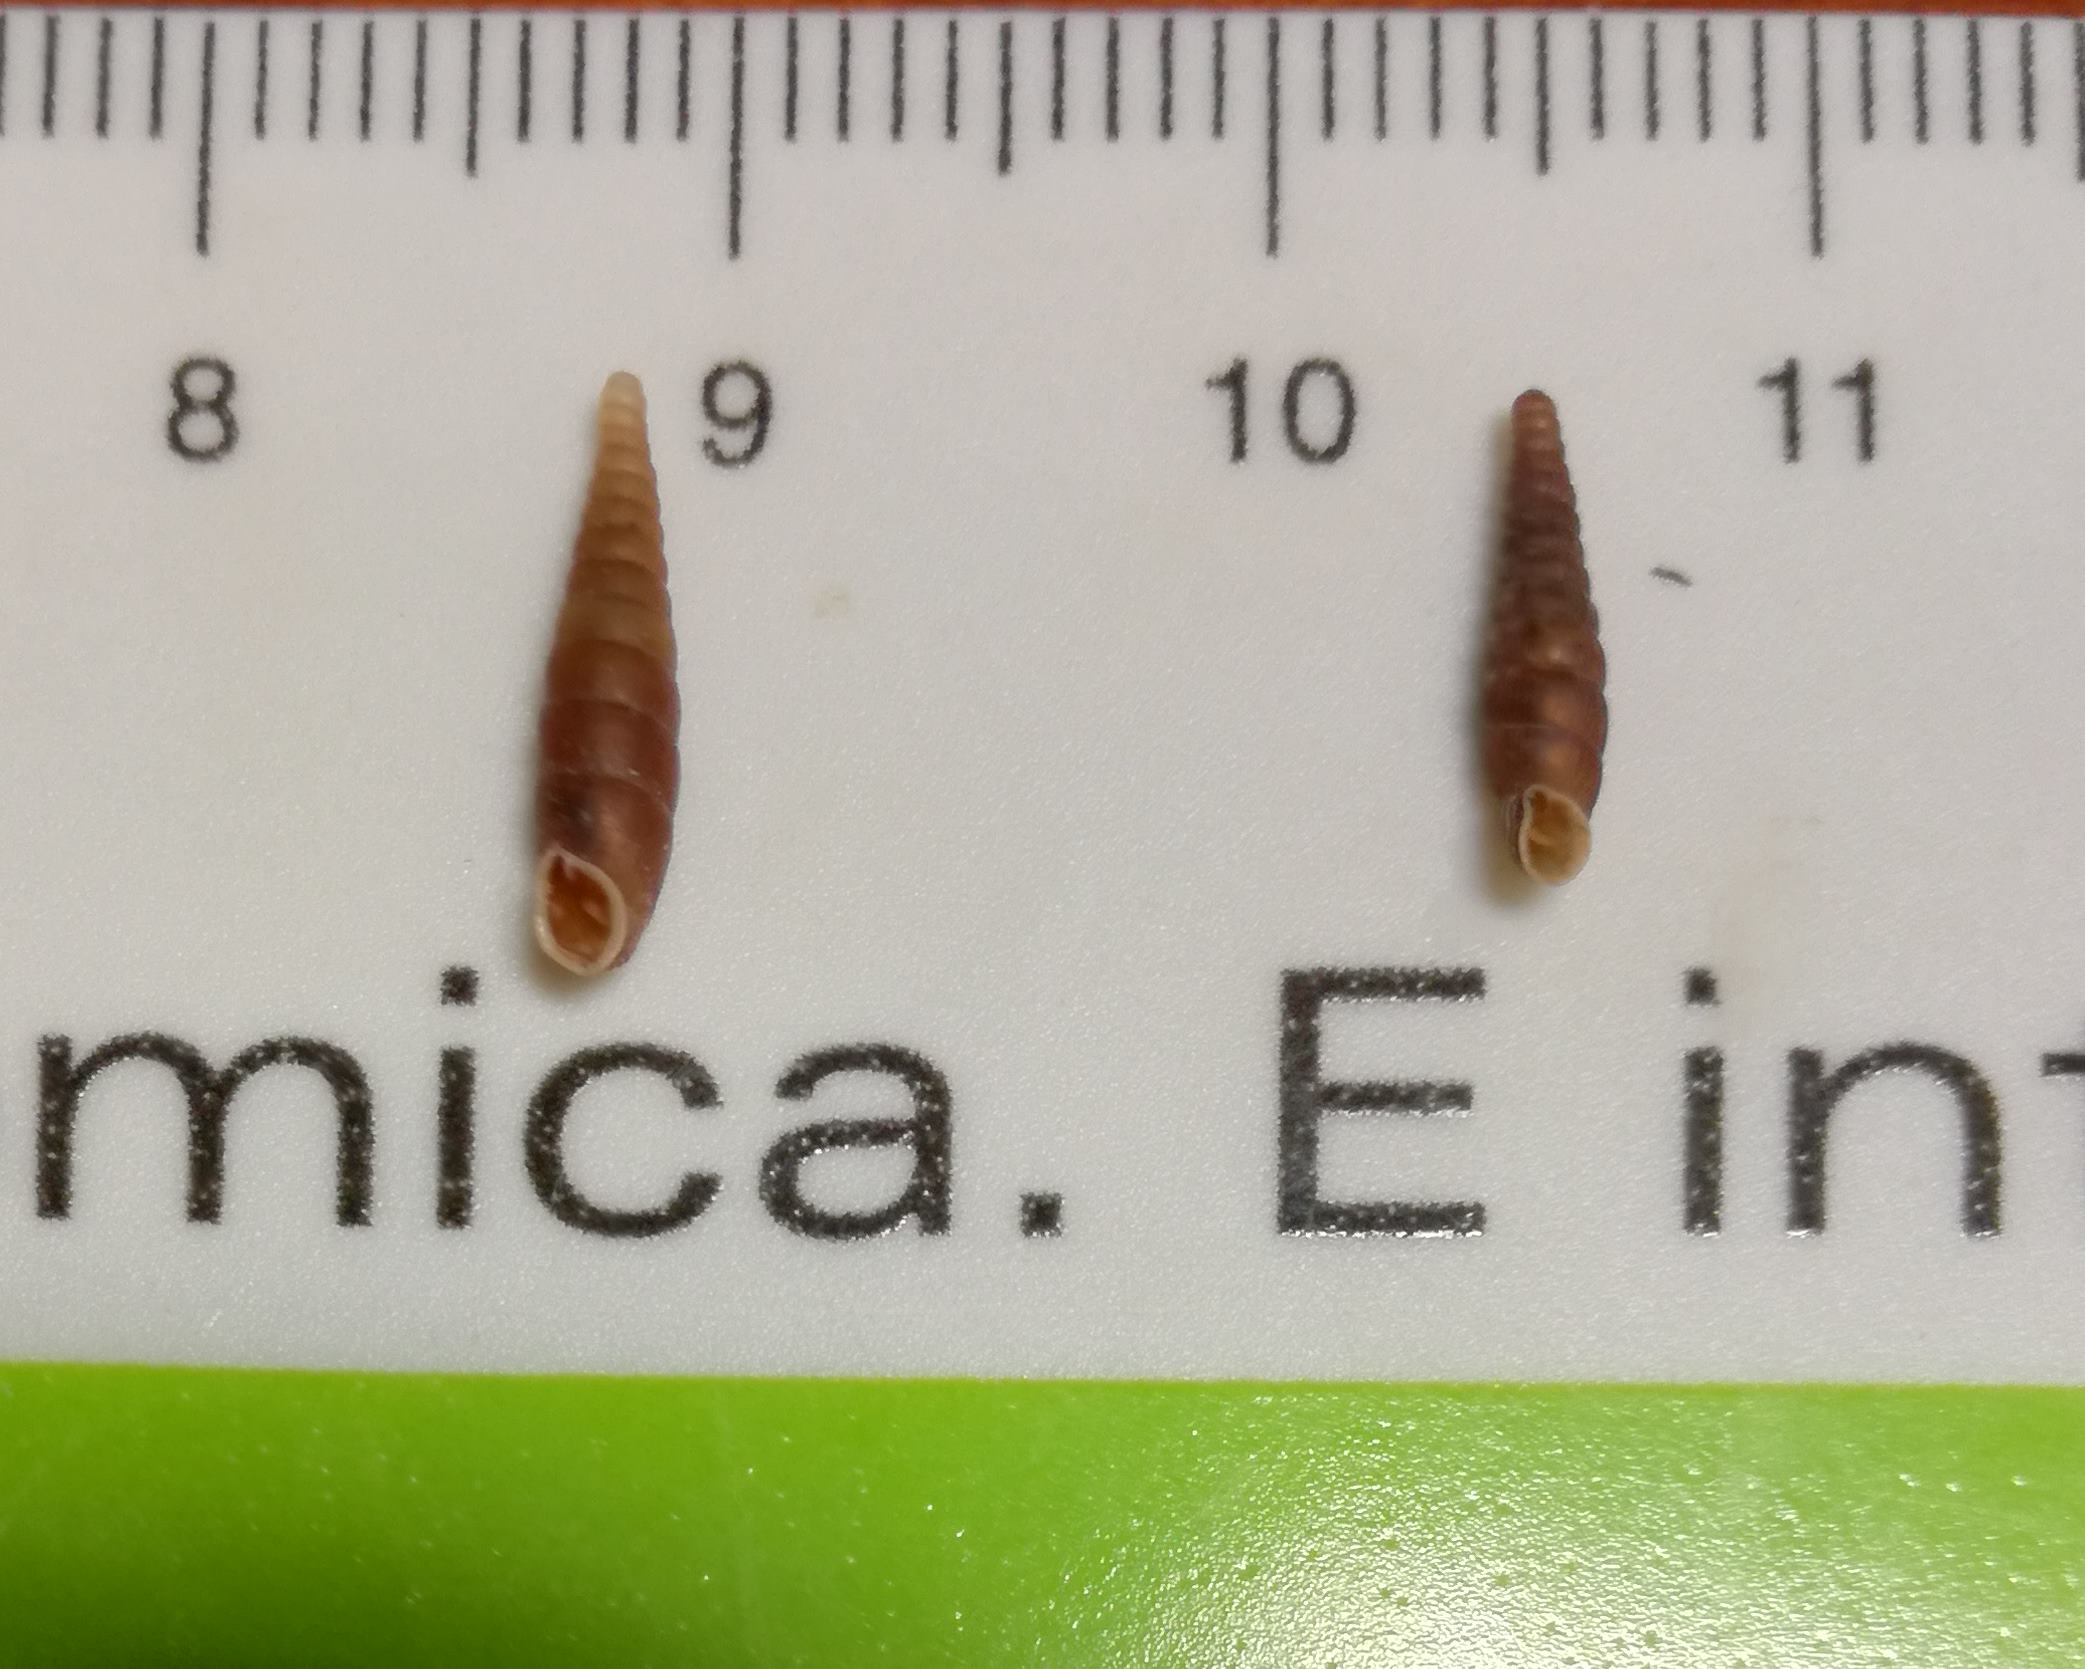 C. exoptata?